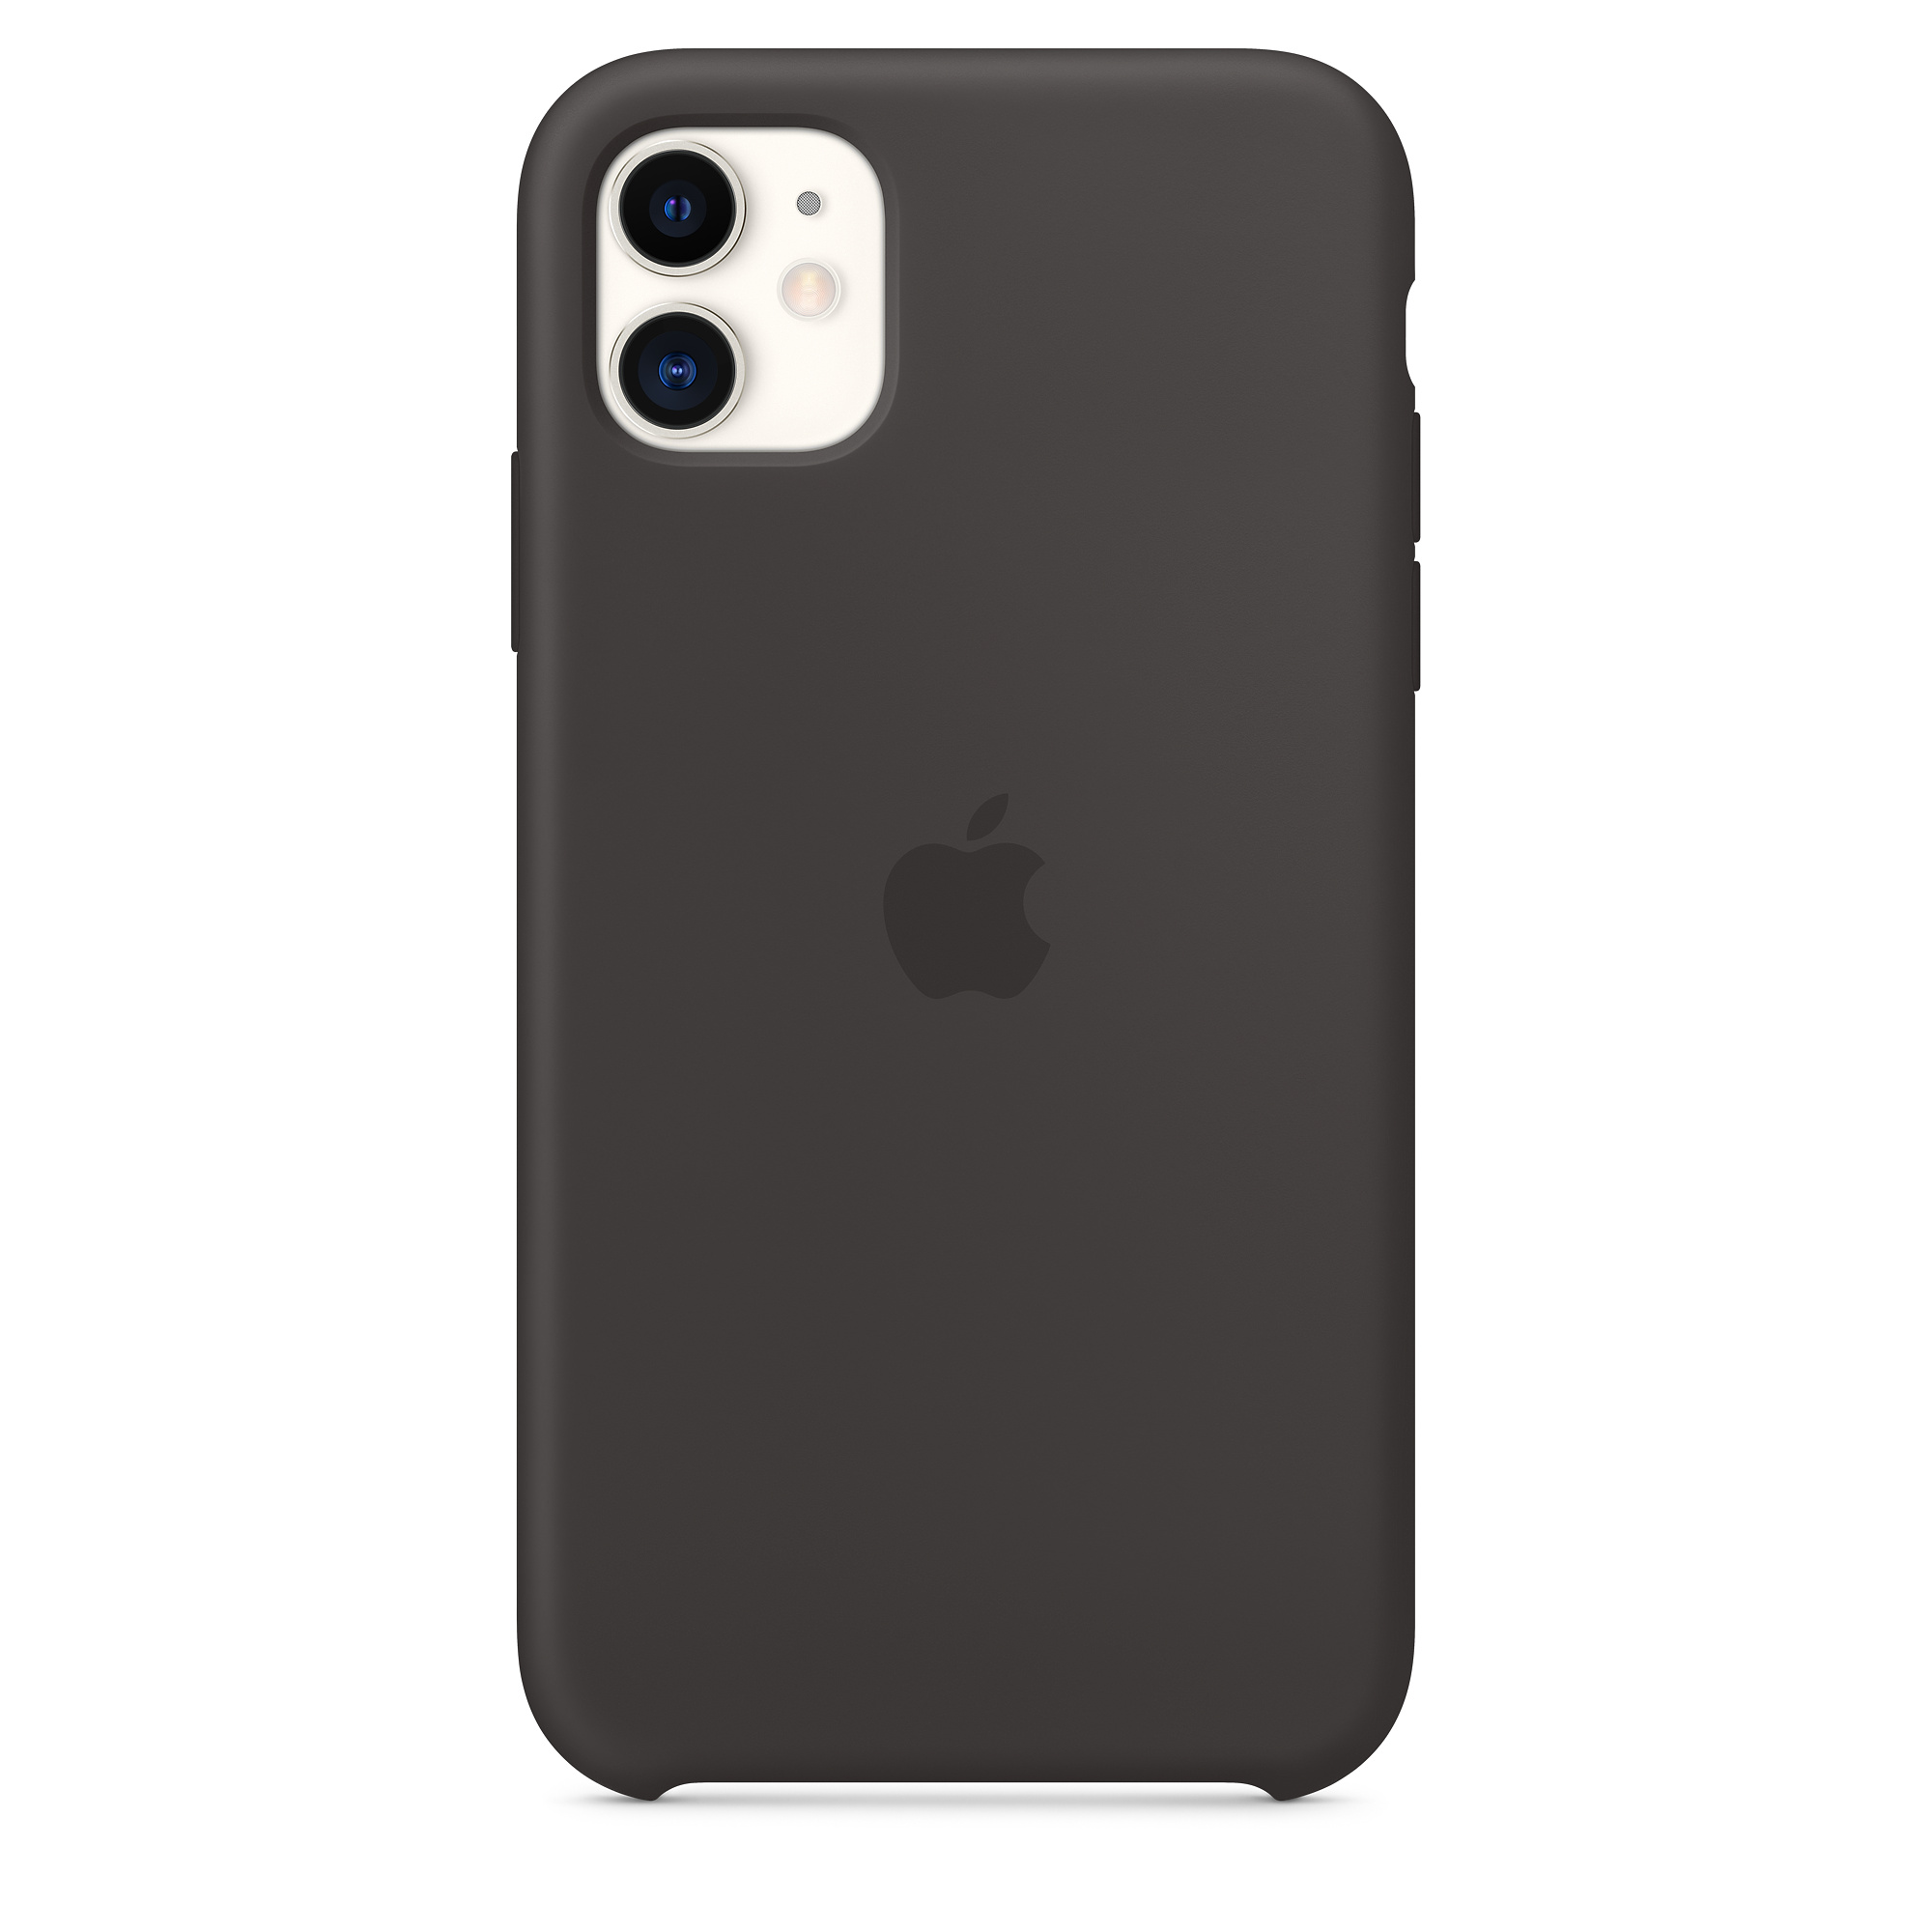 iPhone 11 Silicone Case Original Black MWVU2ZM/A image